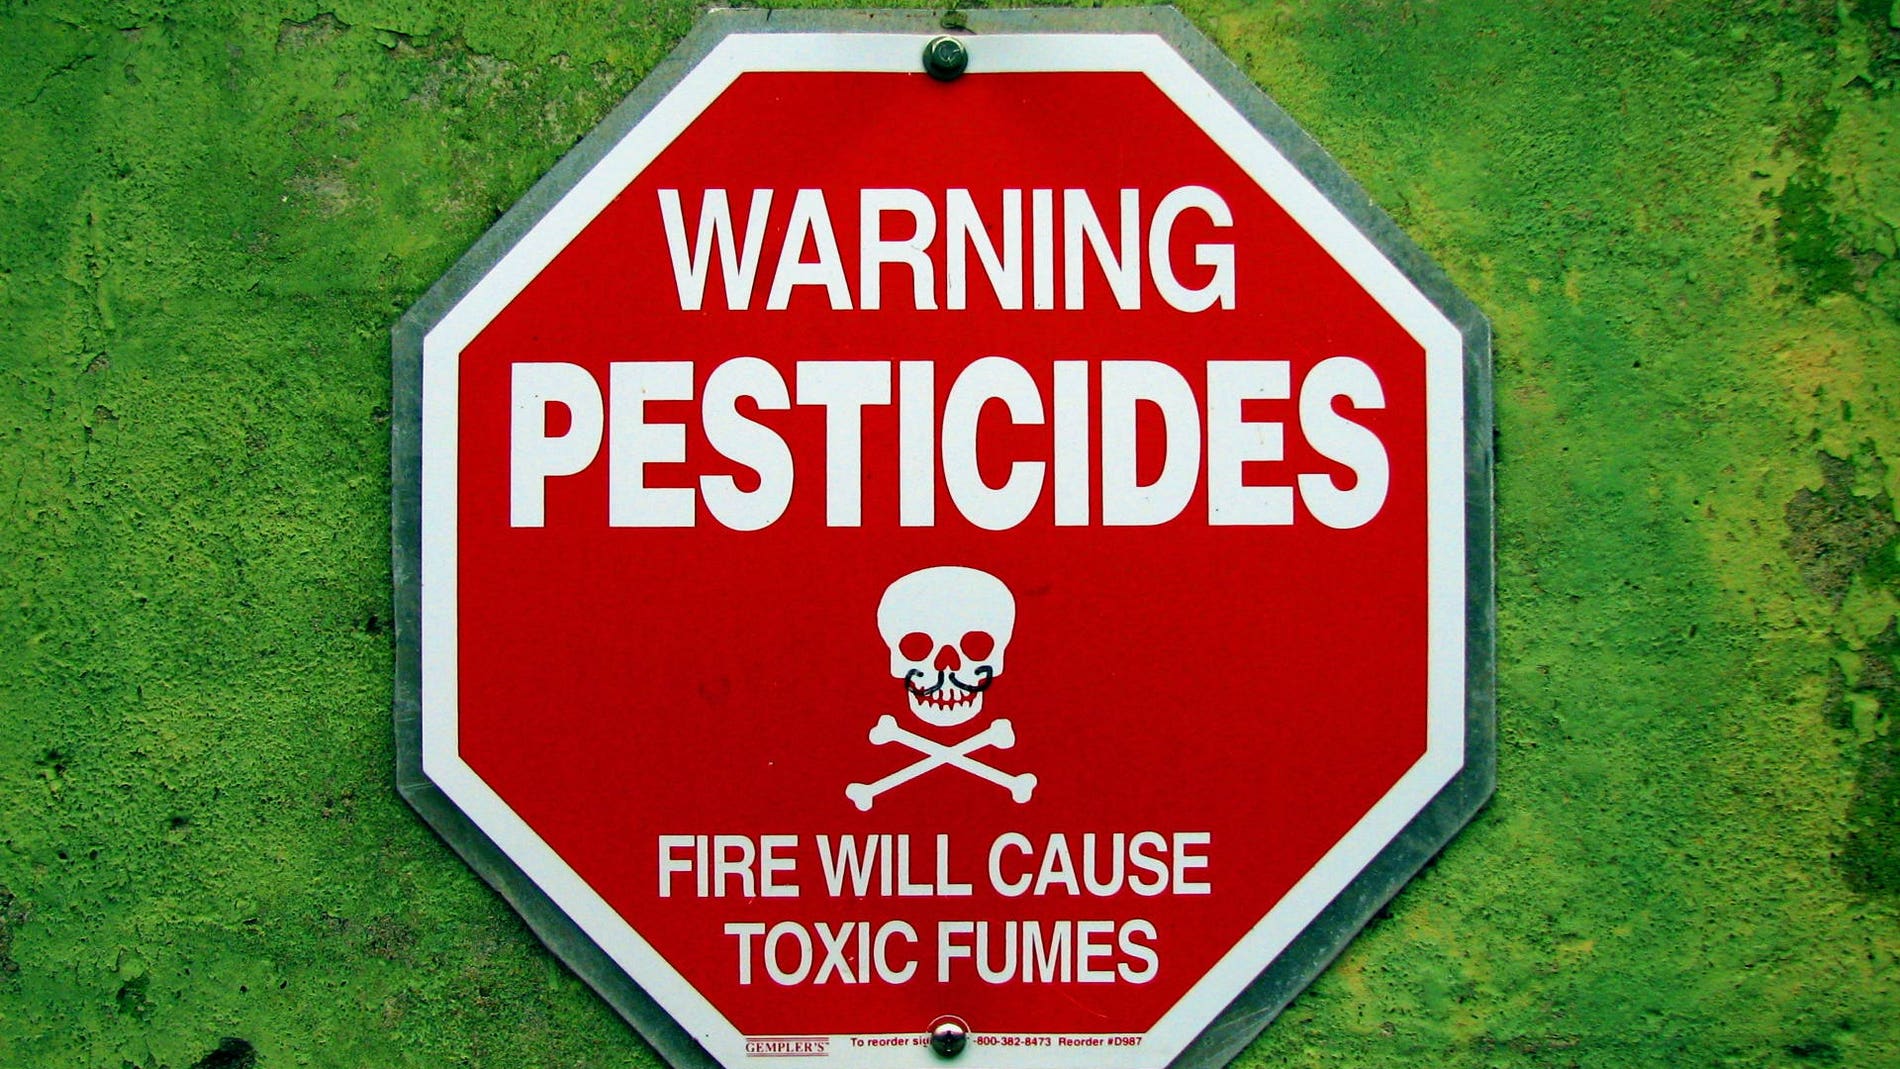 Señal que alerta sobre los peligros de los pesticidas